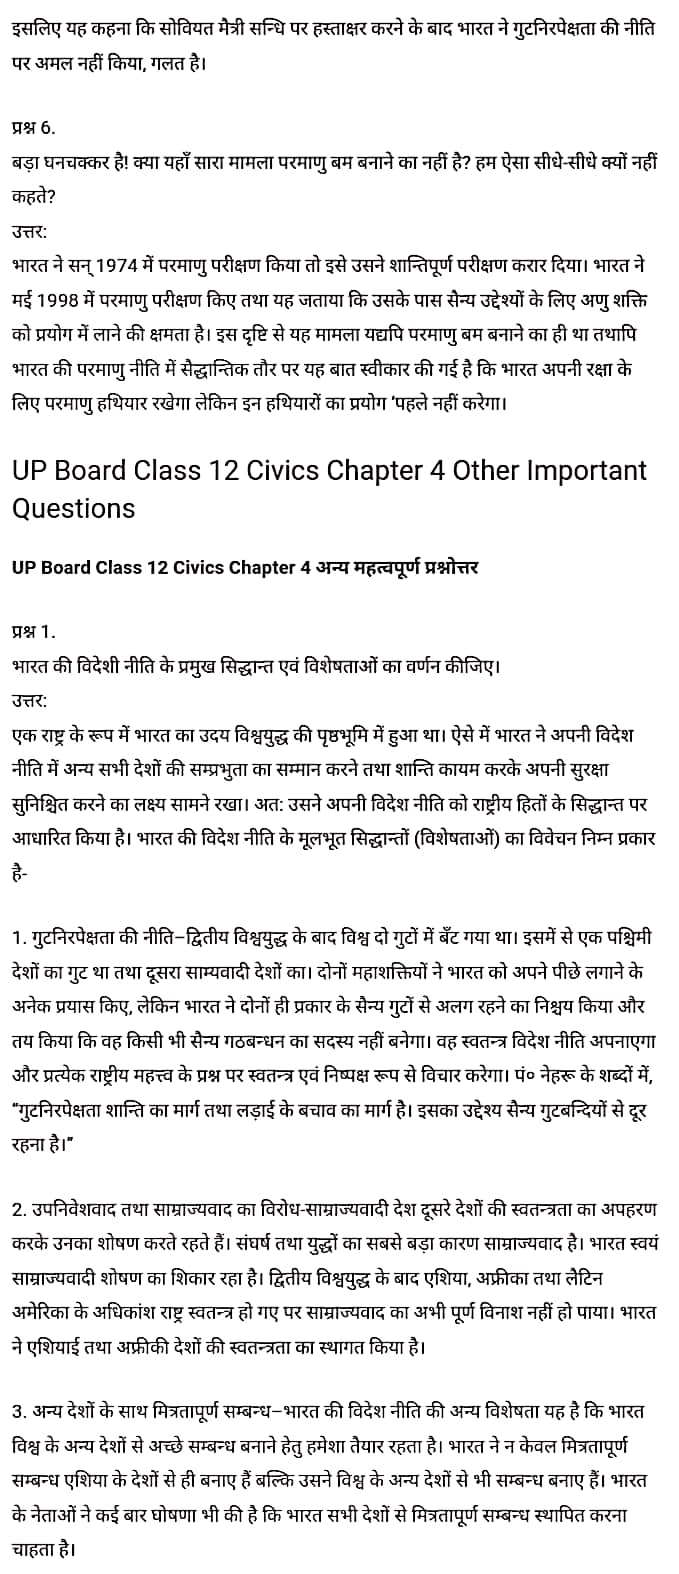 सिविक्स कक्षा 12 नोट्स pdf,  सिविक्स कक्षा 12 नोट्स 2020 NCERT,  सिविक्स कक्षा 12 PDF,  सिविक्स पुस्तक,  सिविक्स की बुक,  सिविक्स प्रश्नोत्तरी Class 12, 12 वीं सिविक्स पुस्तक RBSE,  बिहार बोर्ड 12 वीं सिविक्स नोट्स,   12th Civics book in hindi, 12th Civics notes in hindi, cbse books for class 12, cbse books in hindi, cbse ncert books, class 12 Civics notes in hindi,  class 12 hindi ncert solutions, Civics 2020, Civics 2021, Civics 2022, Civics book class 12, Civics book in hindi, Civics class 12 in hindi, Civics notes for class 12 up board in hindi, ncert all books, ncert app in hindi, ncert book solution, ncert books class 10, ncert books class 12, ncert books for class 7, ncert books for upsc in hindi, ncert books in hindi class 10, ncert books in hindi for class 12 Civics, ncert books in hindi for class 6, ncert books in hindi pdf, ncert class 12 hindi book, ncert english book, ncert Civics book in hindi, ncert Civics books in hindi pdf, ncert Civics class 12, ncert in hindi,  old ncert books in hindi, online ncert books in hindi,  up board 12th, up board 12th syllabus, up board class 10 hindi book, up board class 12 books, up board class 12 new syllabus, up Board Civics 2020, up Board Civics 2021, up Board Civics 2022, up Board Civics 2023, up board intermediate Civics syllabus, up board intermediate syllabus 2021, Up board Master 2021, up board model paper 2021, up board model paper all subject, up board new syllabus of class 12th Civics, up board paper 2021, Up board syllabus 2021, UP board syllabus 2022,  12 veen kee siviks kee kitaab hindee mein, 12 veen kee siviks kee nots hindee mein, 12 veen kaksha kee seebeeesasee kee kitaaben, hindee kee seebeeesasee kee kitaaben, seebeeesasee kee enaseeaaratee kee kitaaben, 12 kee kaksha kee siviks kee nots hindee mein, 12 veen kee kaksha kee hindee kee nats kee solvaints, 2020 kee siviks kee 2020, siviks kee 2022, sivik kee seeviks buk klaas 12, siviks buk in hindee, sivik klaas 12 hindee mein, siviks nots in klaas 12 ap bord in hindee, nchairt all books, nchairt app in hindi, nchairt book solution, nchairt books klaas 10, nchairt books klaas 12, nchairt books kaksha 7 ke lie, nchairt books for hindi mein hindee mein, nchairt books in hindi chlass 10, nchairt books in hindi for chlass 12 sivik, nchairt books in hindi ke lie kaksha 6, nchairt books in hindi pdf, nchairt books 12 hindee pustak, nchairt ainglish pustak , nchairt chivichs book in hindi, nchairt chivichs books in hindi pdf, nchairt chivichs chlass 12, nchairt in hindi, puraanee nchairt books in hindi, onalain nchairt books in hindi, bord 12 veen tak, bord 12 veen ka silebas, bord kaksha 10 kee hindee pustak tak , bord kaksha 12 kee kitaaben, bord kee kaksha 12 kee naee paathyakram, bord kee paathyacharya 2020 tak, bord kee kaksha kee kaksha 2021, up bord siviks 2022, up bord siviks 2023, up bord intarameediet siviks silebas, up bord intarameediet silebas 2021, up bord maastar 2021, up bord modal pepar 2021, up bord bord pepar sabhee vishay, up bord 12 veen siviks ke nae silebas tak. , bord pepar 2021, पुस्तकें up bord silebas 2021, yoopee bord paathyakram 2022,  12 वीं सिविक्स पुस्तक हिंदी में, 12 वीं सिविक्स नोट्स हिंदी में, कक्षा 12 के लिए सीबीएससी पुस्तकें, हिंदी में सीबीएससी पुस्तकें, सीबीएससी  पुस्तकें, कक्षा 12 सिविक्स नोट्स हिंदी में, कक्षा 12 हिंदी एनसीईआरटी समाधान, सिविक्स 2020, सिविक्स 2021, सिविक्स 2022, सिविक्स  बुक क्लास 12, सिविक्स बुक इन हिंदी, बायोलॉजी क्लास 12 हिंदी में, सिविक्स नोट्स इन क्लास 12 यूपी  बोर्ड इन हिंदी, एनसीईआरटी सिविक्स की किताब हिंदी में,  बोर्ड 12 वीं तक, 12 वीं तक की पाठ्यक्रम, बोर्ड कक्षा 10 की हिंदी पुस्तक  , बोर्ड की कक्षा 12 की किताबें, बोर्ड की कक्षा 12 की नई पाठ्यक्रम, बोर्ड सिविक्स 2020, यूपी   बोर्ड सिविक्स 2021, यूपी  बोर्ड सिविक्स 2022, यूपी  बोर्ड सिविक्स 2023, यूपी  बोर्ड इंटरमीडिएट बायोलॉजी सिलेबस, यूपी  बोर्ड इंटरमीडिएट सिलेबस 2021, यूपी  बोर्ड मास्टर 2021, यूपी  बोर्ड मॉडल पेपर 2021, यूपी  मॉडल पेपर सभी विषय, यूपी  बोर्ड न्यू क्लास का सिलेबस  12 वीं सिविक्स, अप बोर्ड पेपर 2021, यूपी बोर्ड सिलेबस 2021, यूपी बोर्ड सिलेबस 2022,